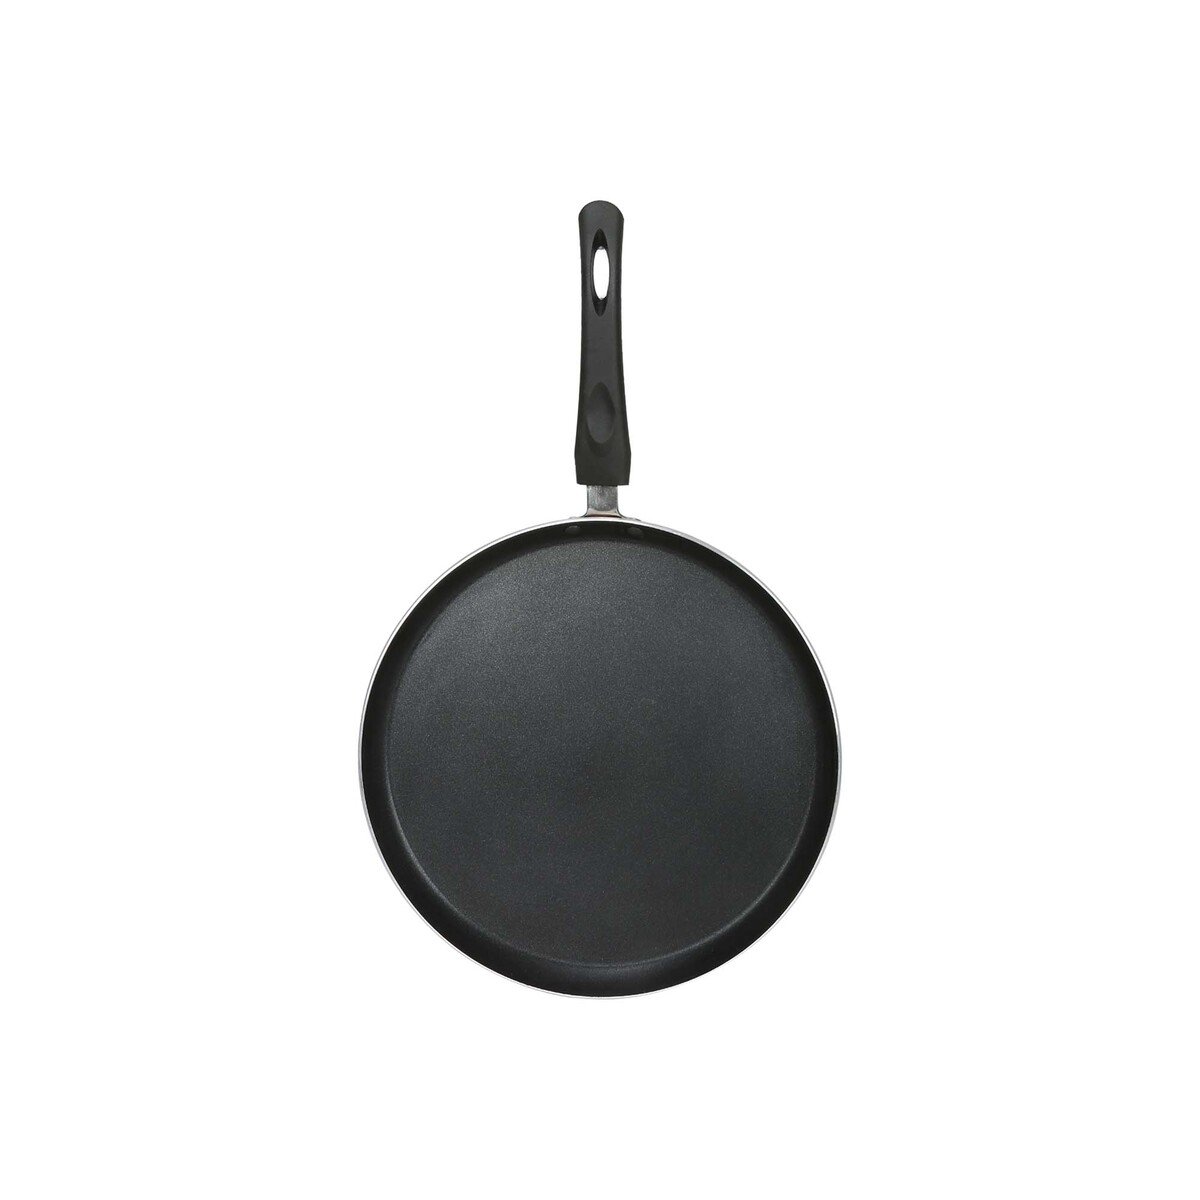 Chefline Non-Stick Aluminium Crepe Pan, 30 cm, IND